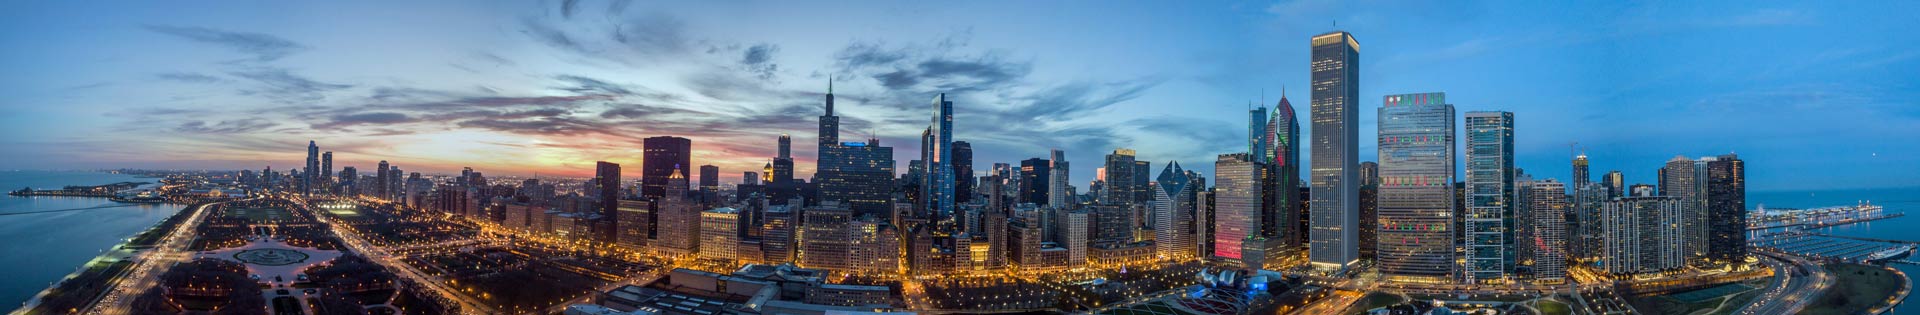 Chicago skyline at dusk